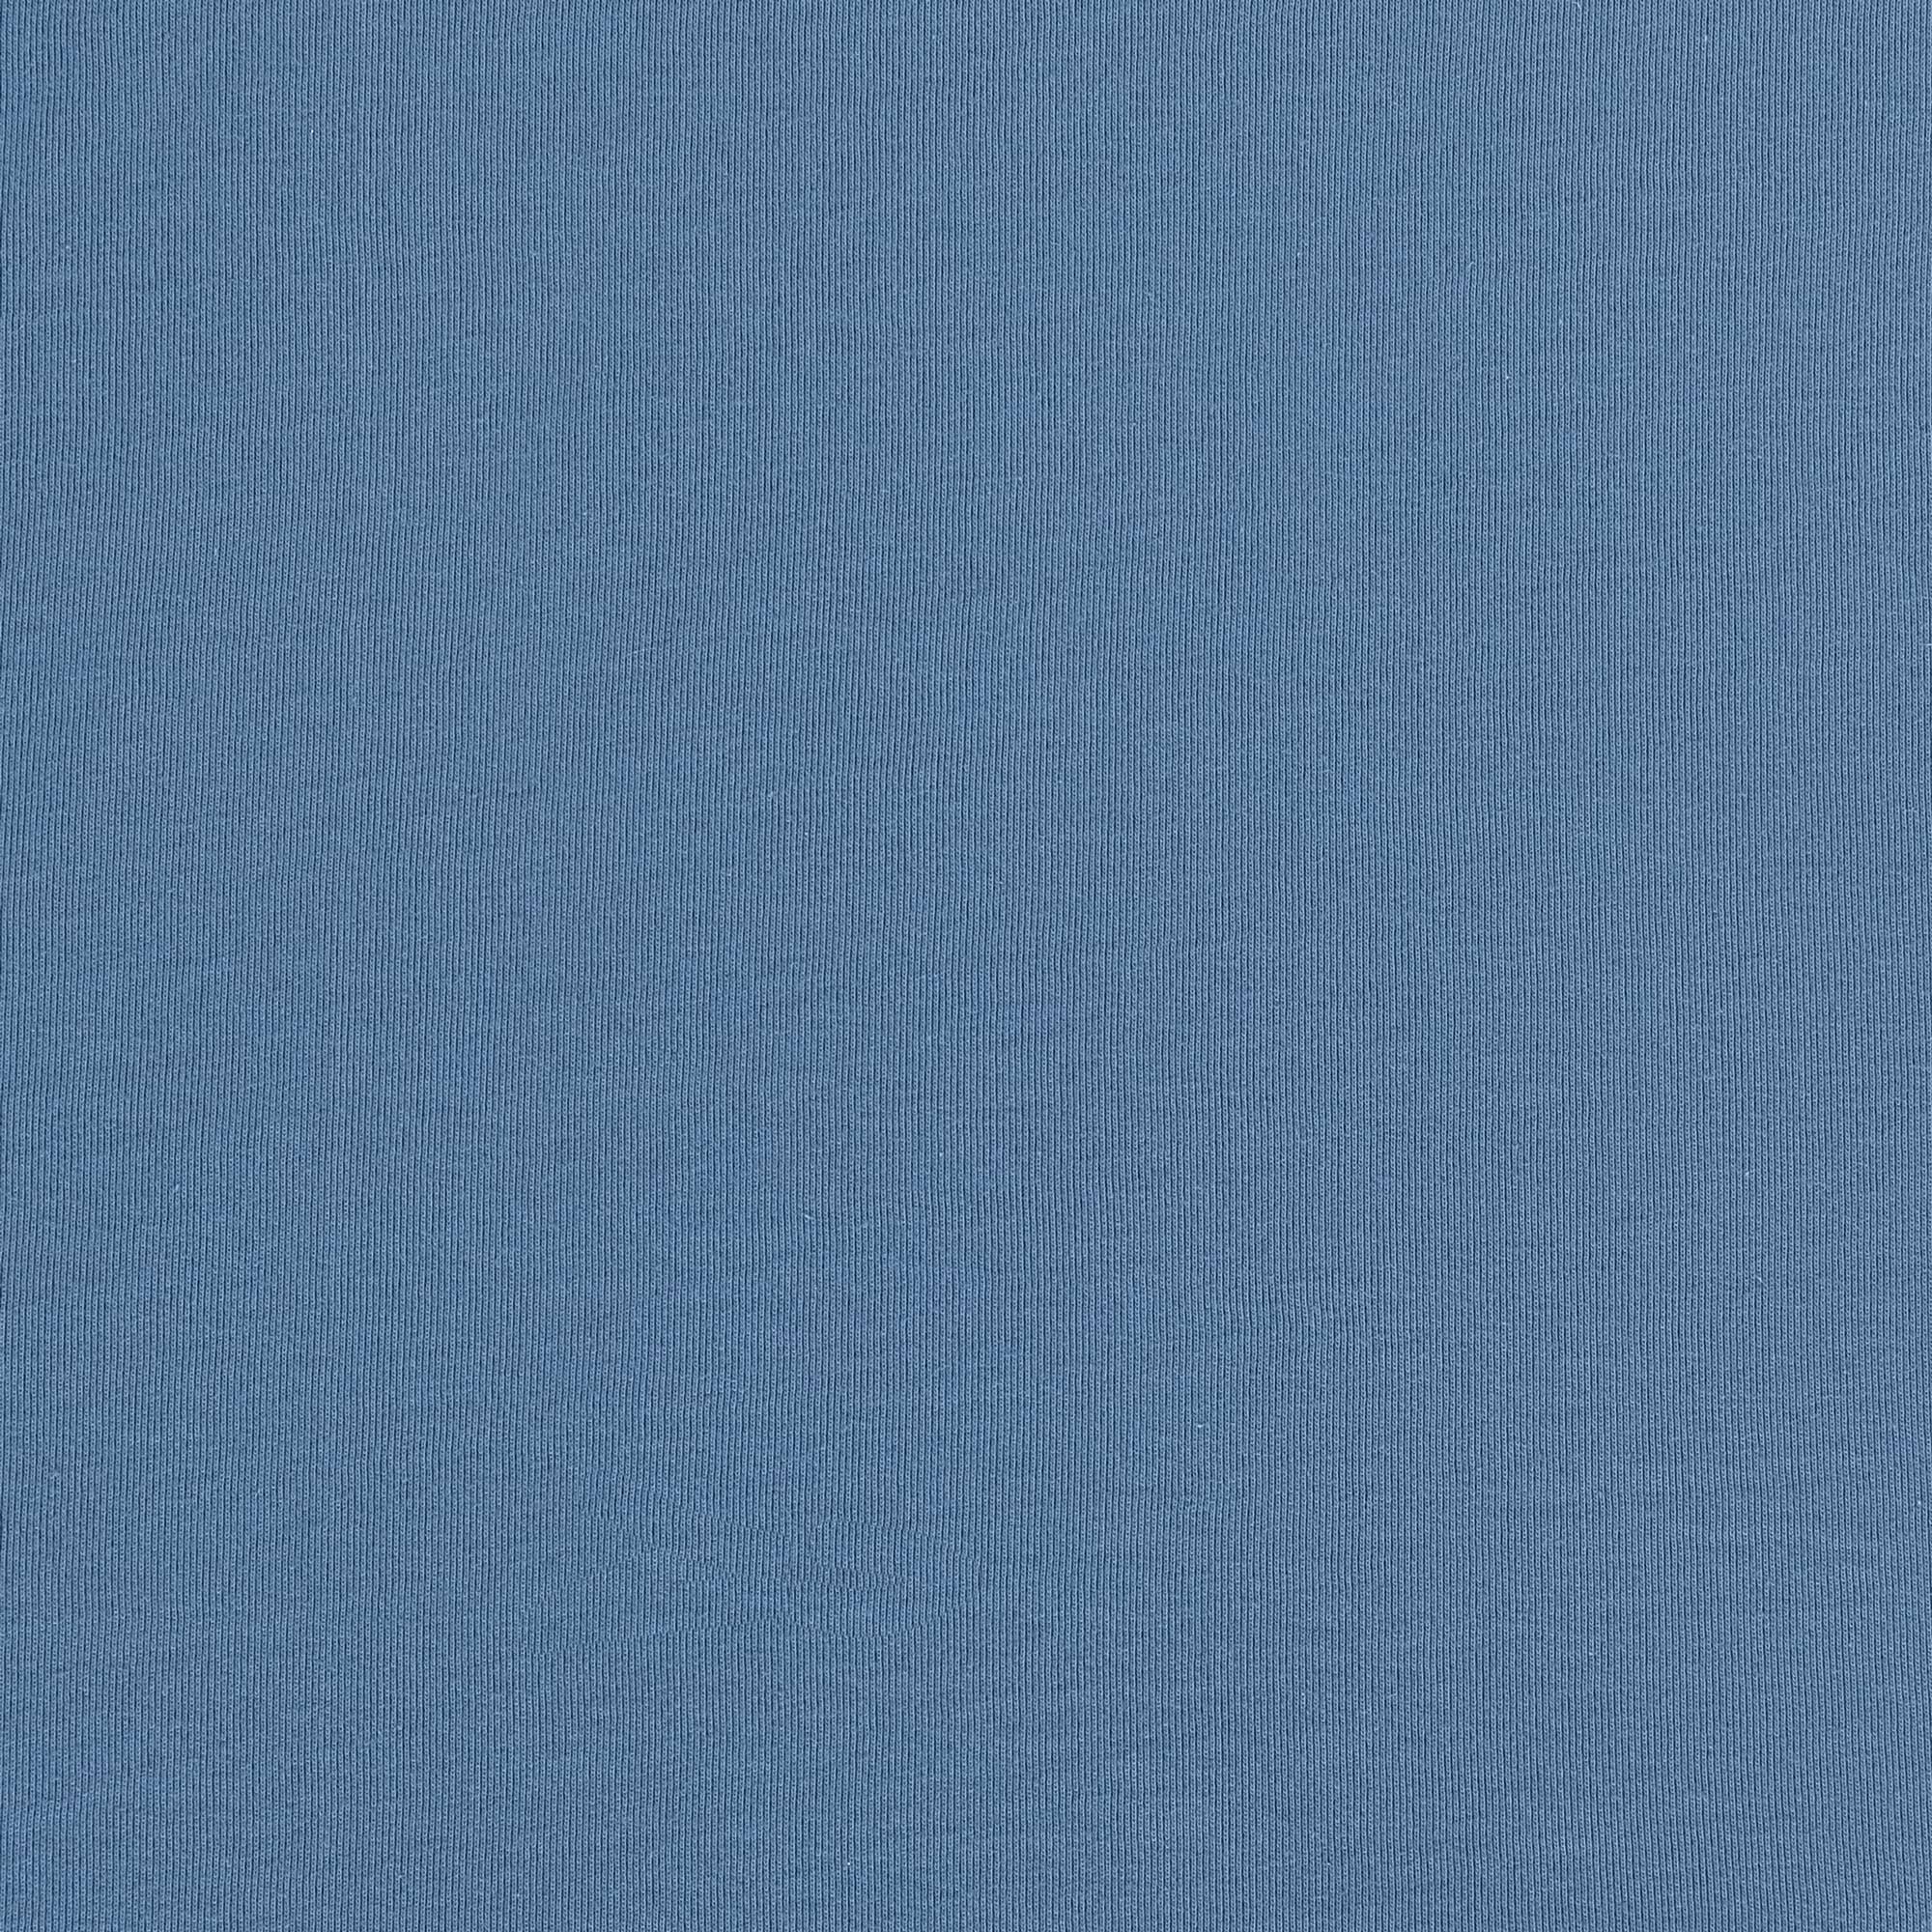 Рубашка мужская Diva Teks поло голубая, цвет голубой, размер XL - фото 6